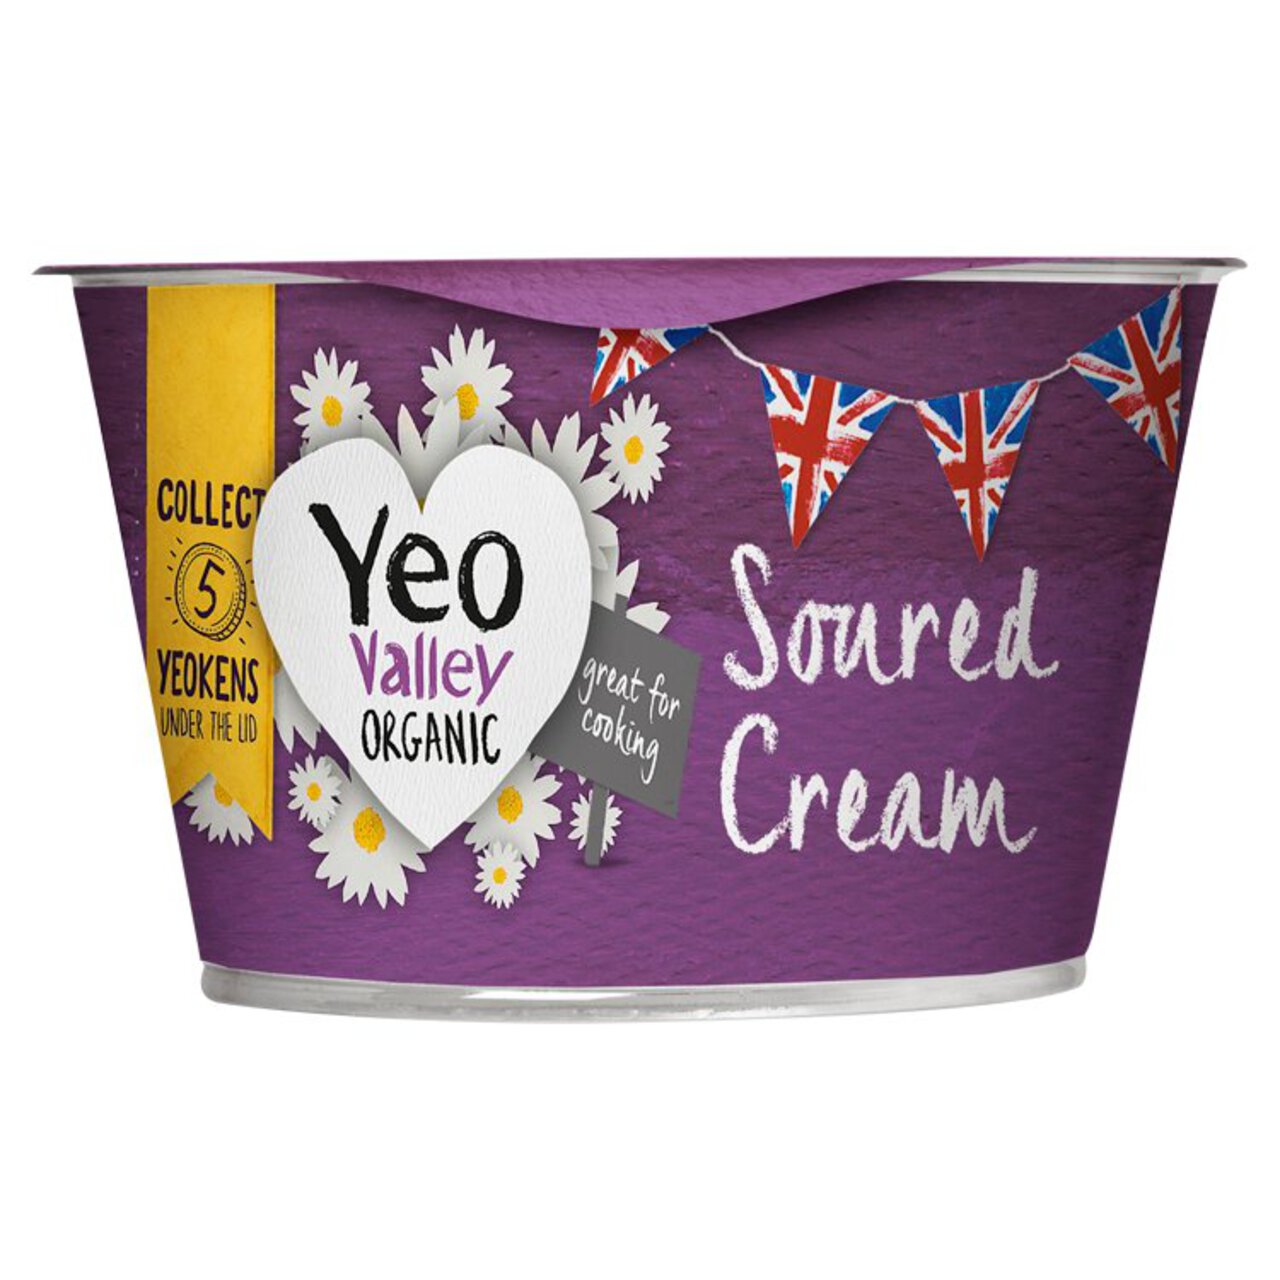 Yeo Valley Organic Soured Cream 200g